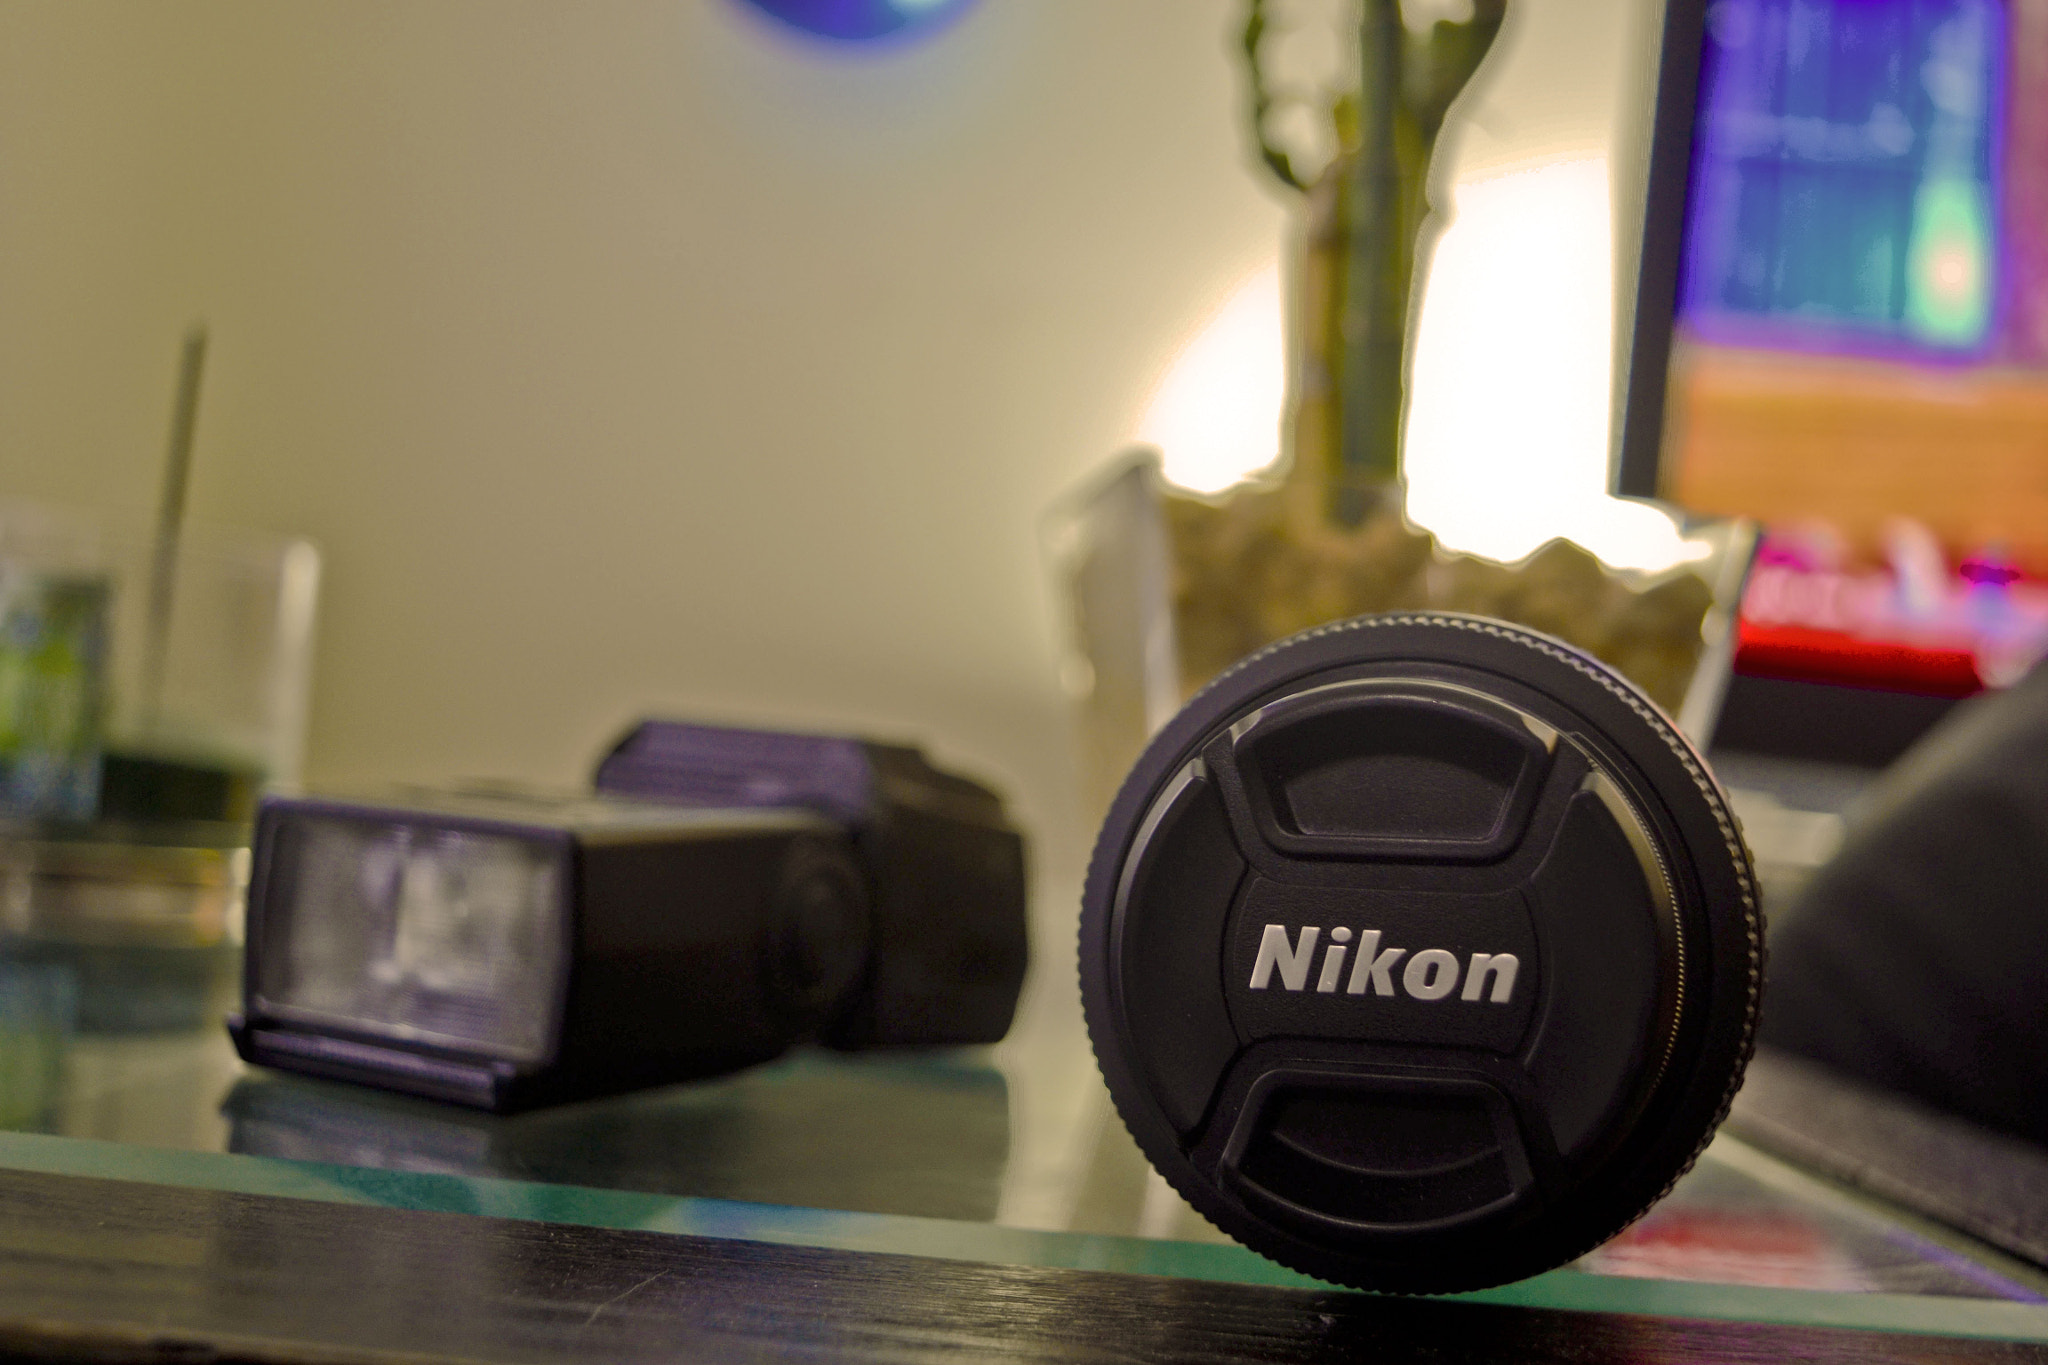 Nikon D3100 + Nikon AF-S DX Nikkor 18-55mm F3.5-5.6G VR II sample photo. Vantage point photography